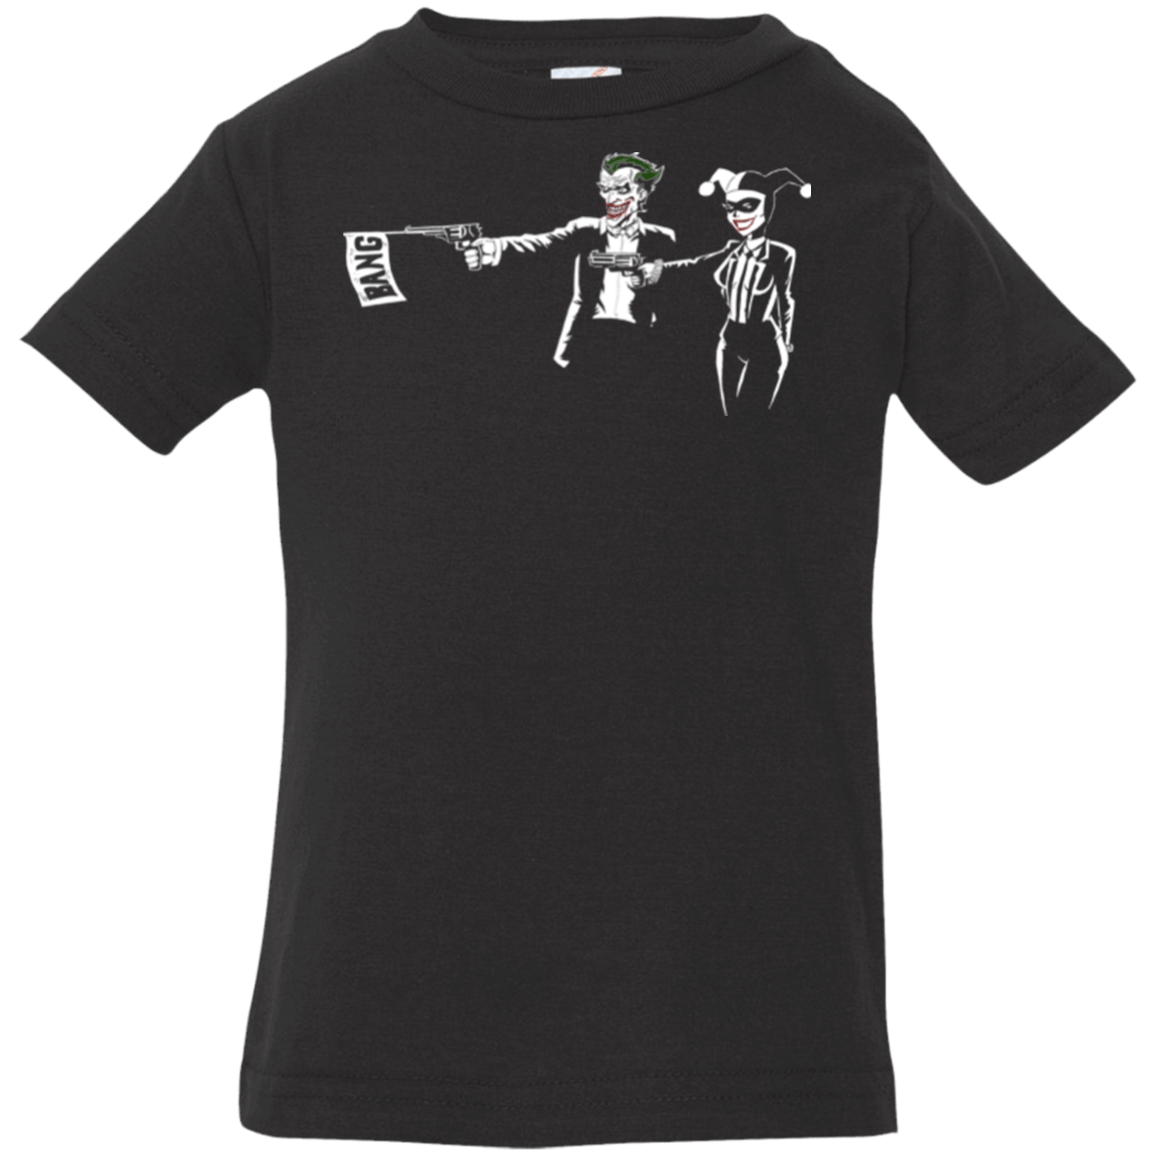 T-Shirts Black / 6 Months Mad Fiction Infant Premium T-Shirt